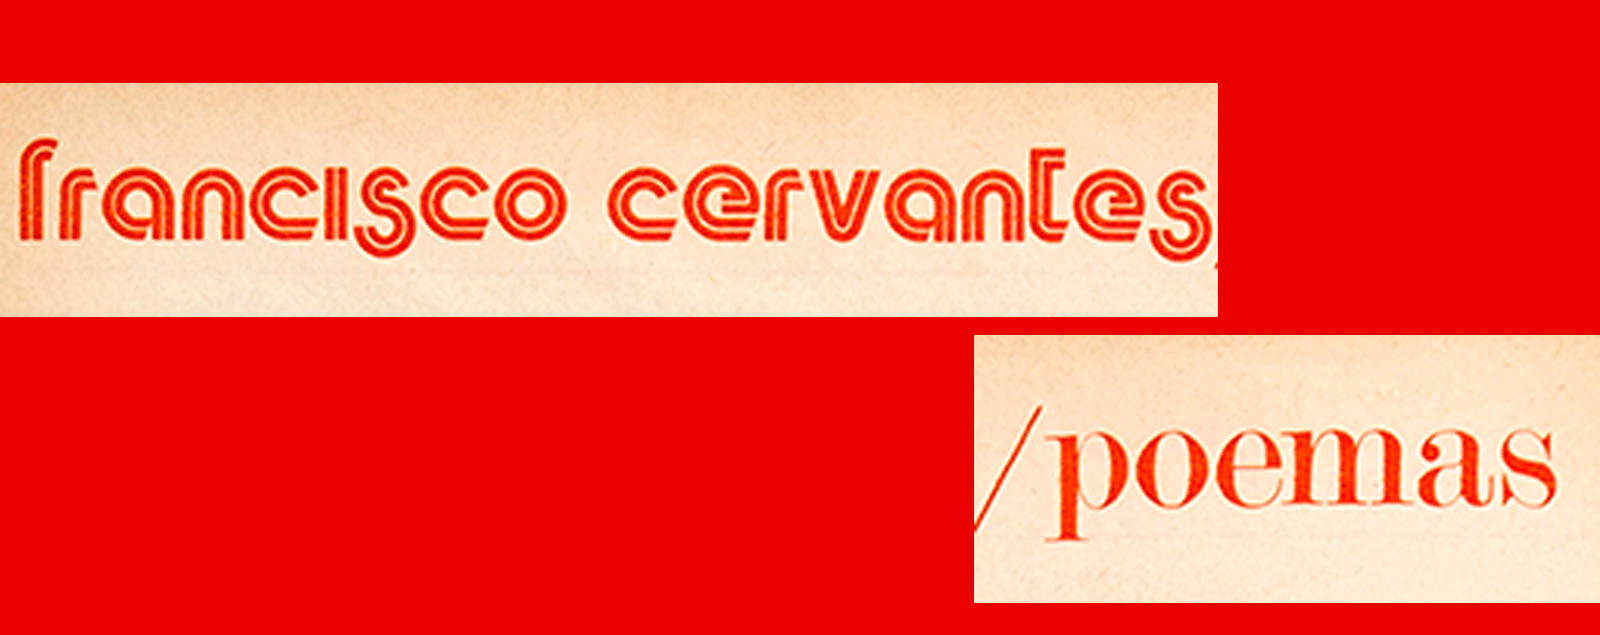 Francisco Cervantes: Poemas